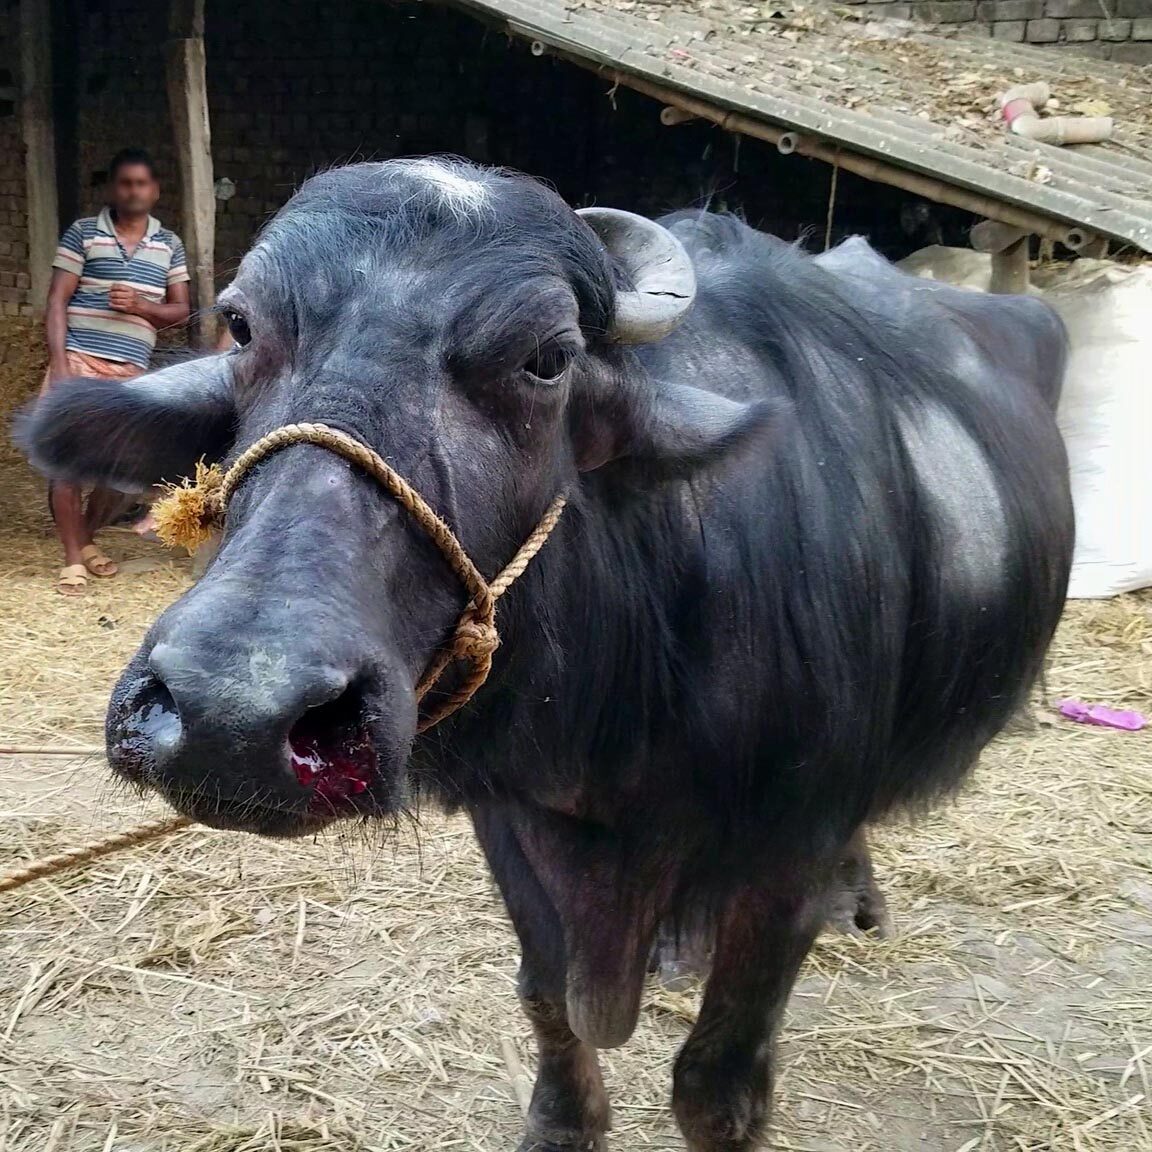 Animal Equality urges Kolkata authorities to prosecute buffalo abusers |  Animal Equality India